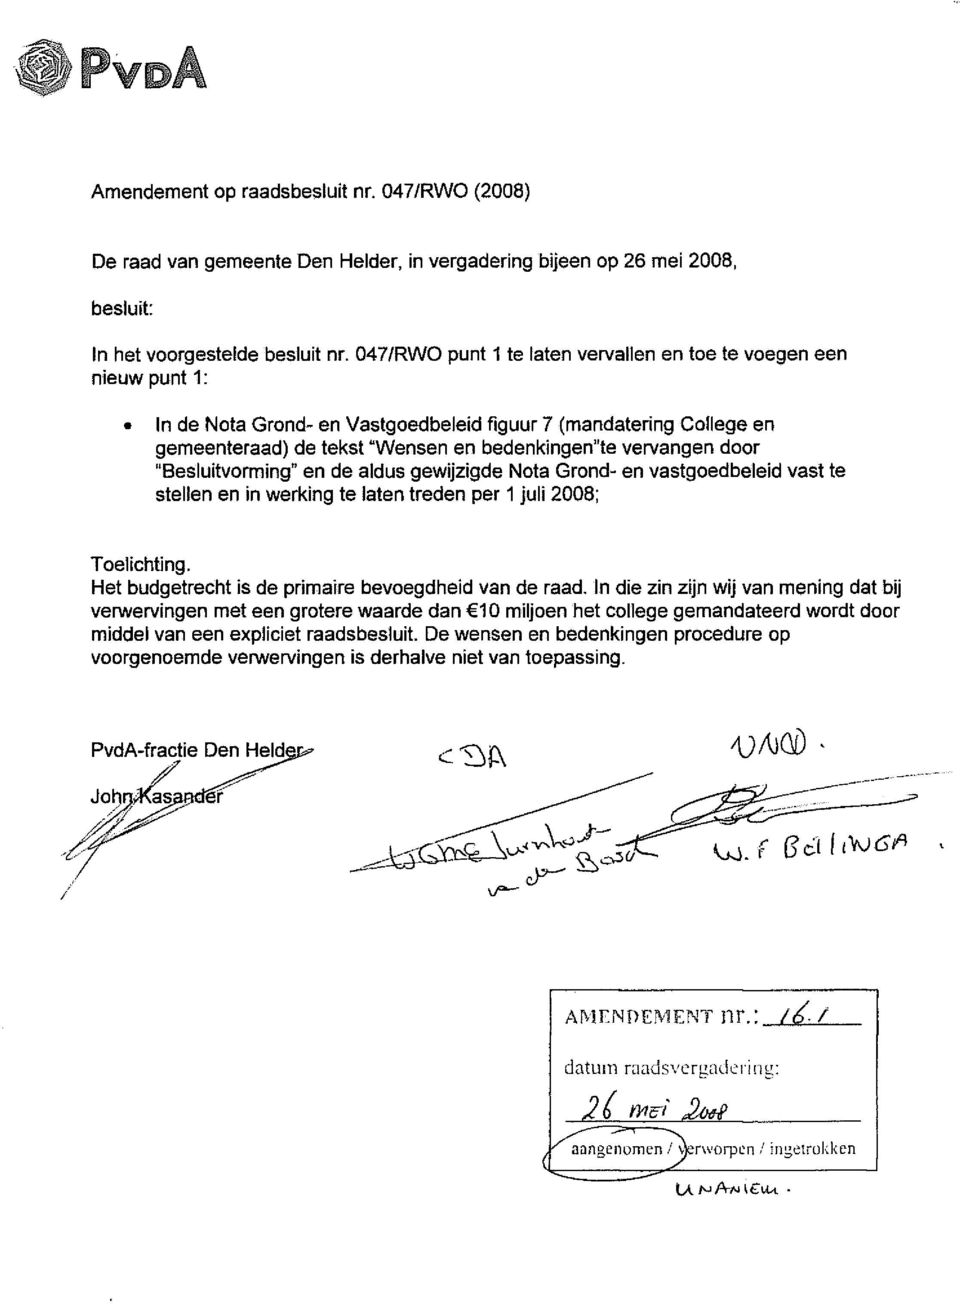 door "Besluitvorming" en de aldus gewijzigde Nota Grond- en vastgoedbeleid vast te stellen en in werking te laten treden per 1 juli 2008; Toelichting.